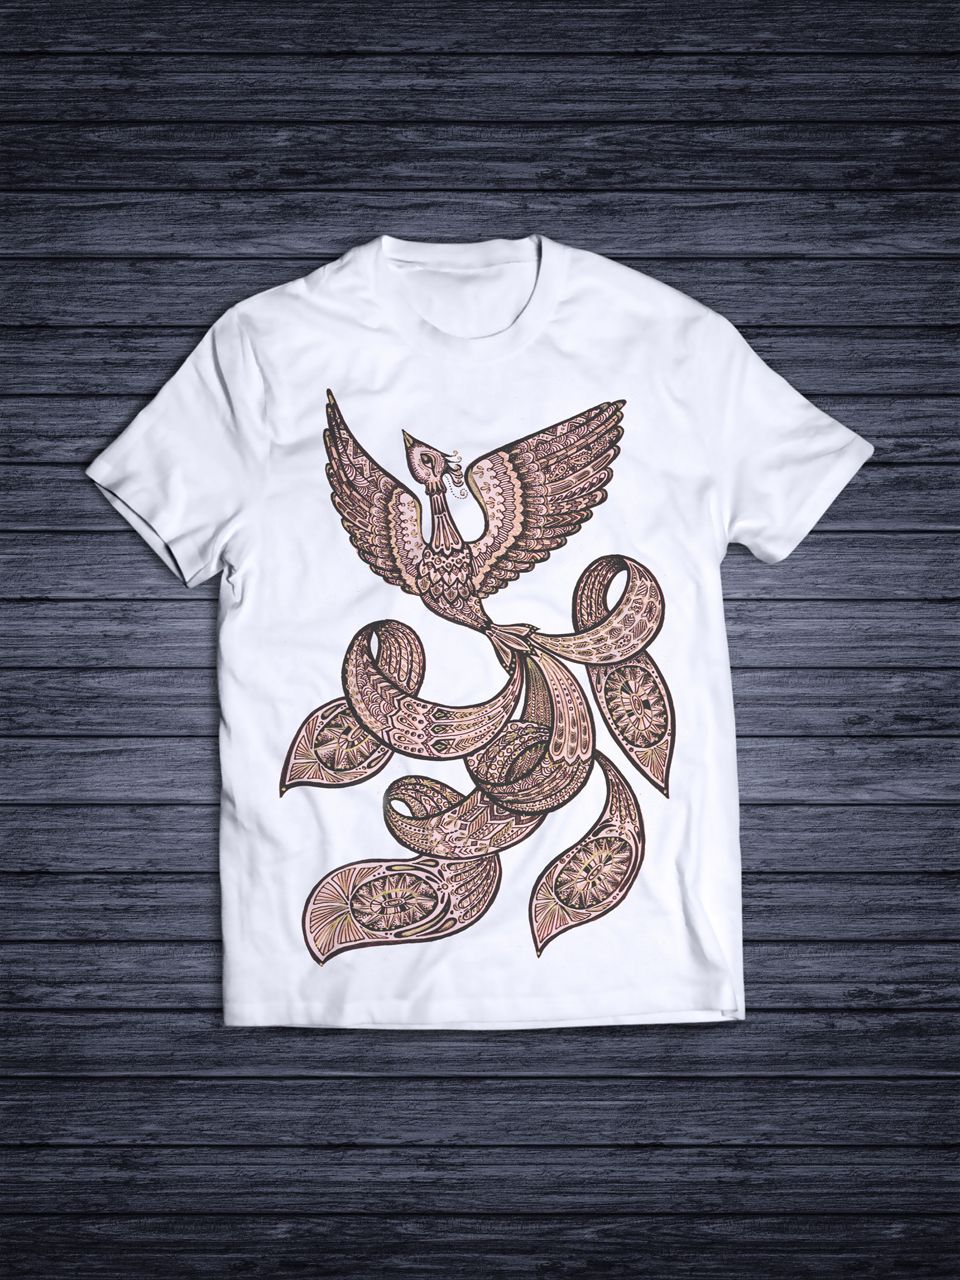 Дизайн футболок для проекта Патриот - дизайнер Libertina